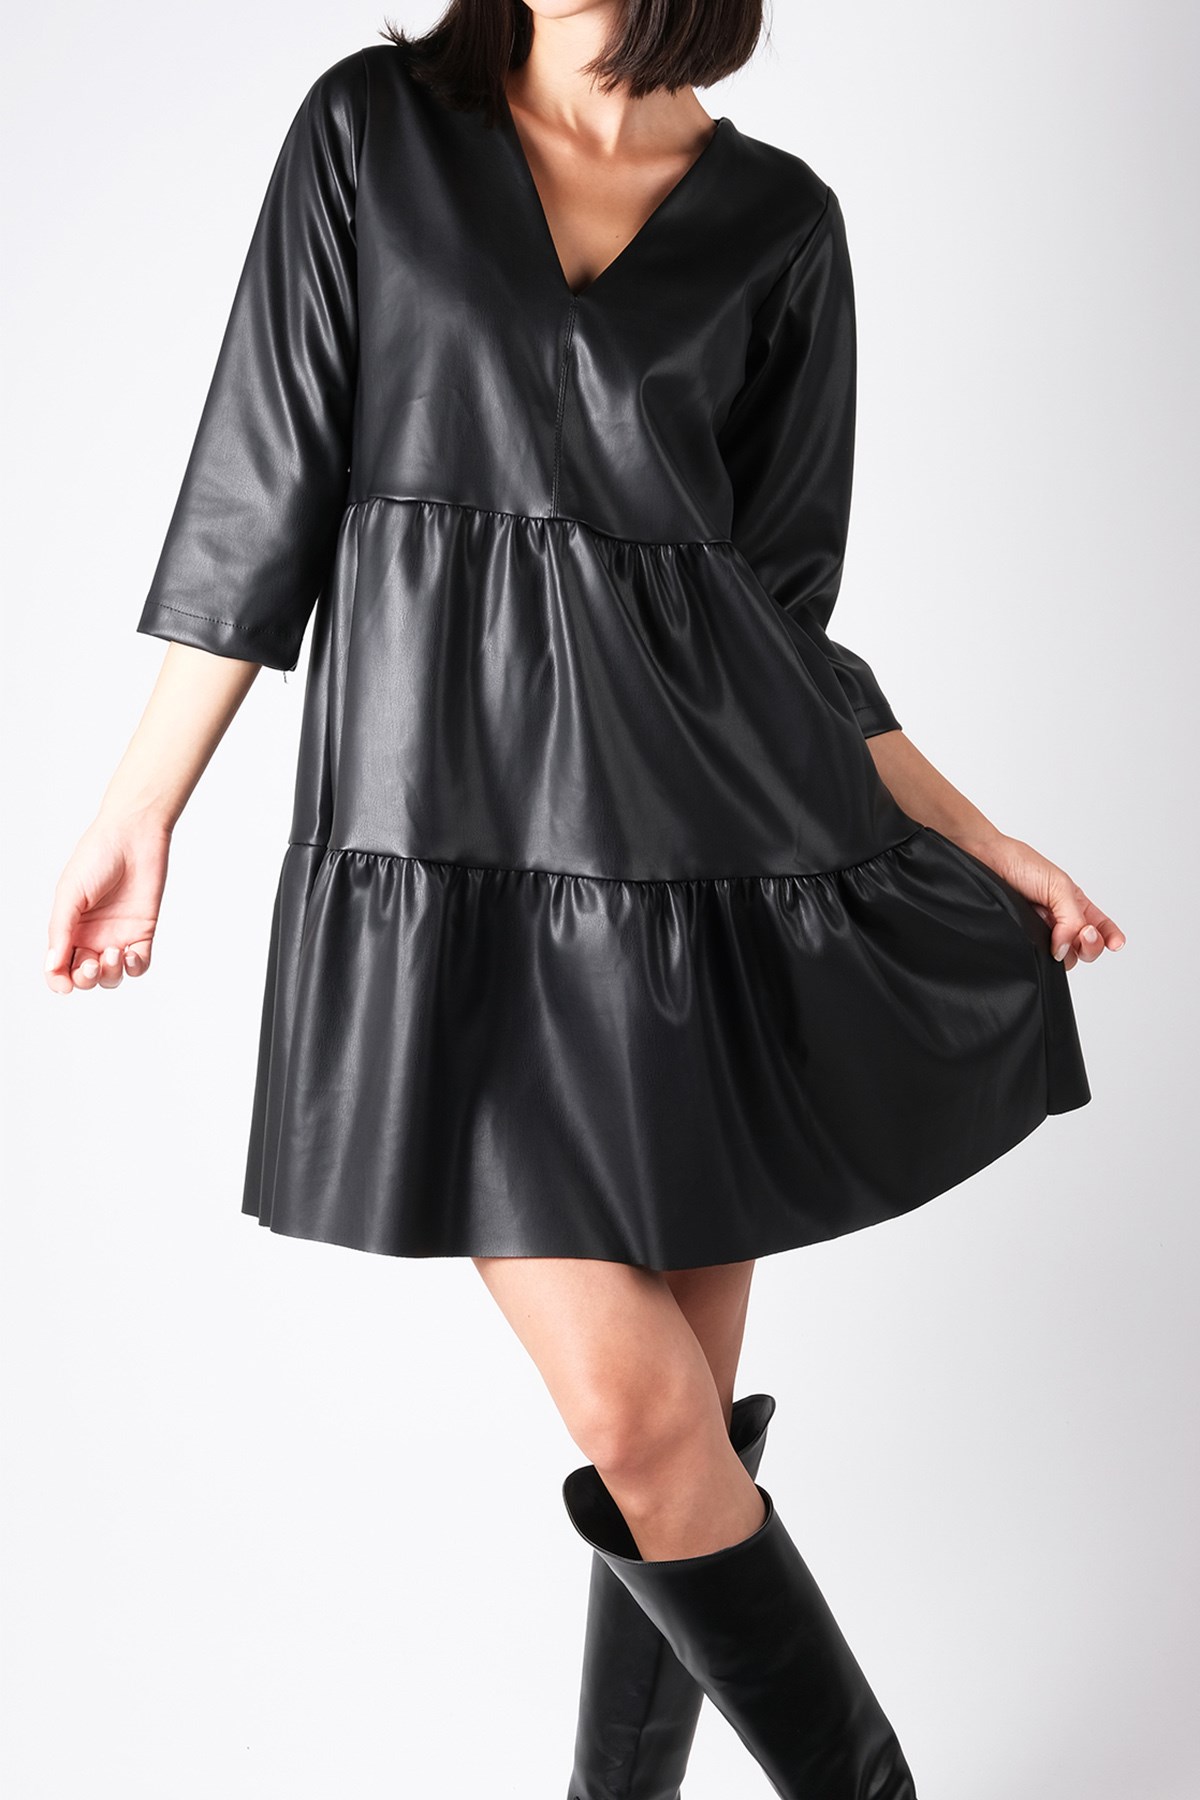 Mio Gusto Siyah Renk Deri, V Yaka Volanlı Kadın Elbise